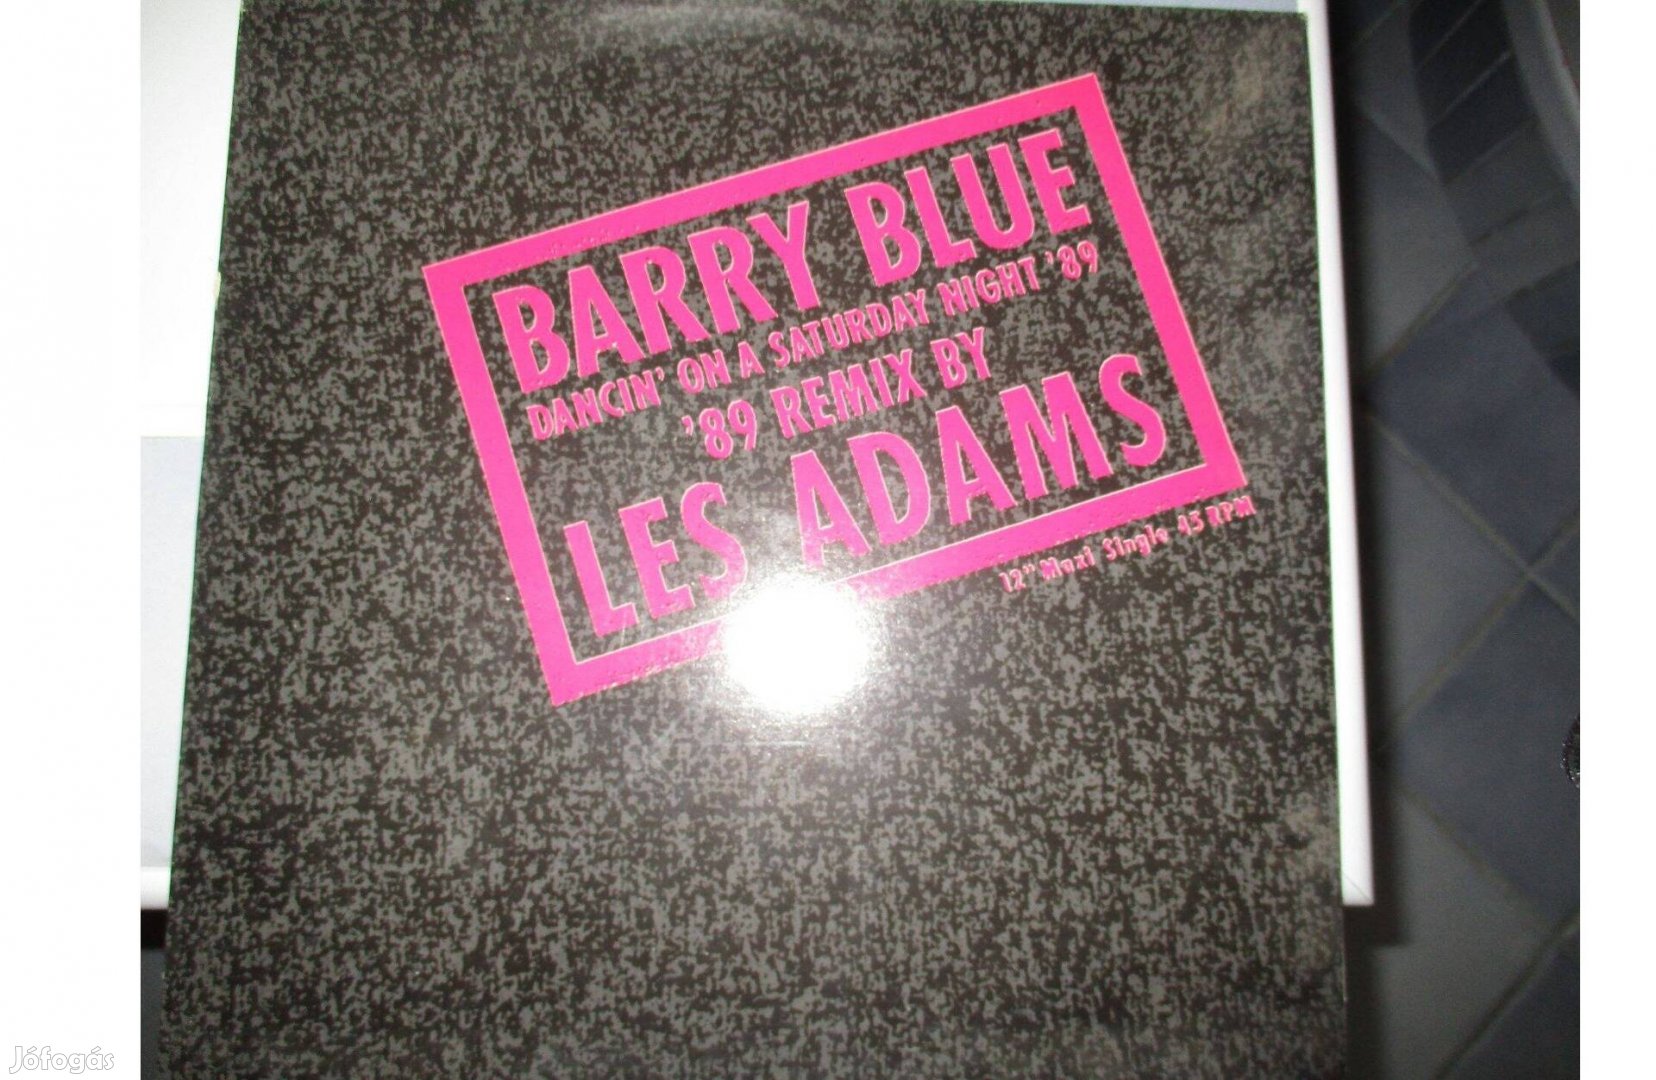 Barry Blue maxi bakelit hanglemez eladó